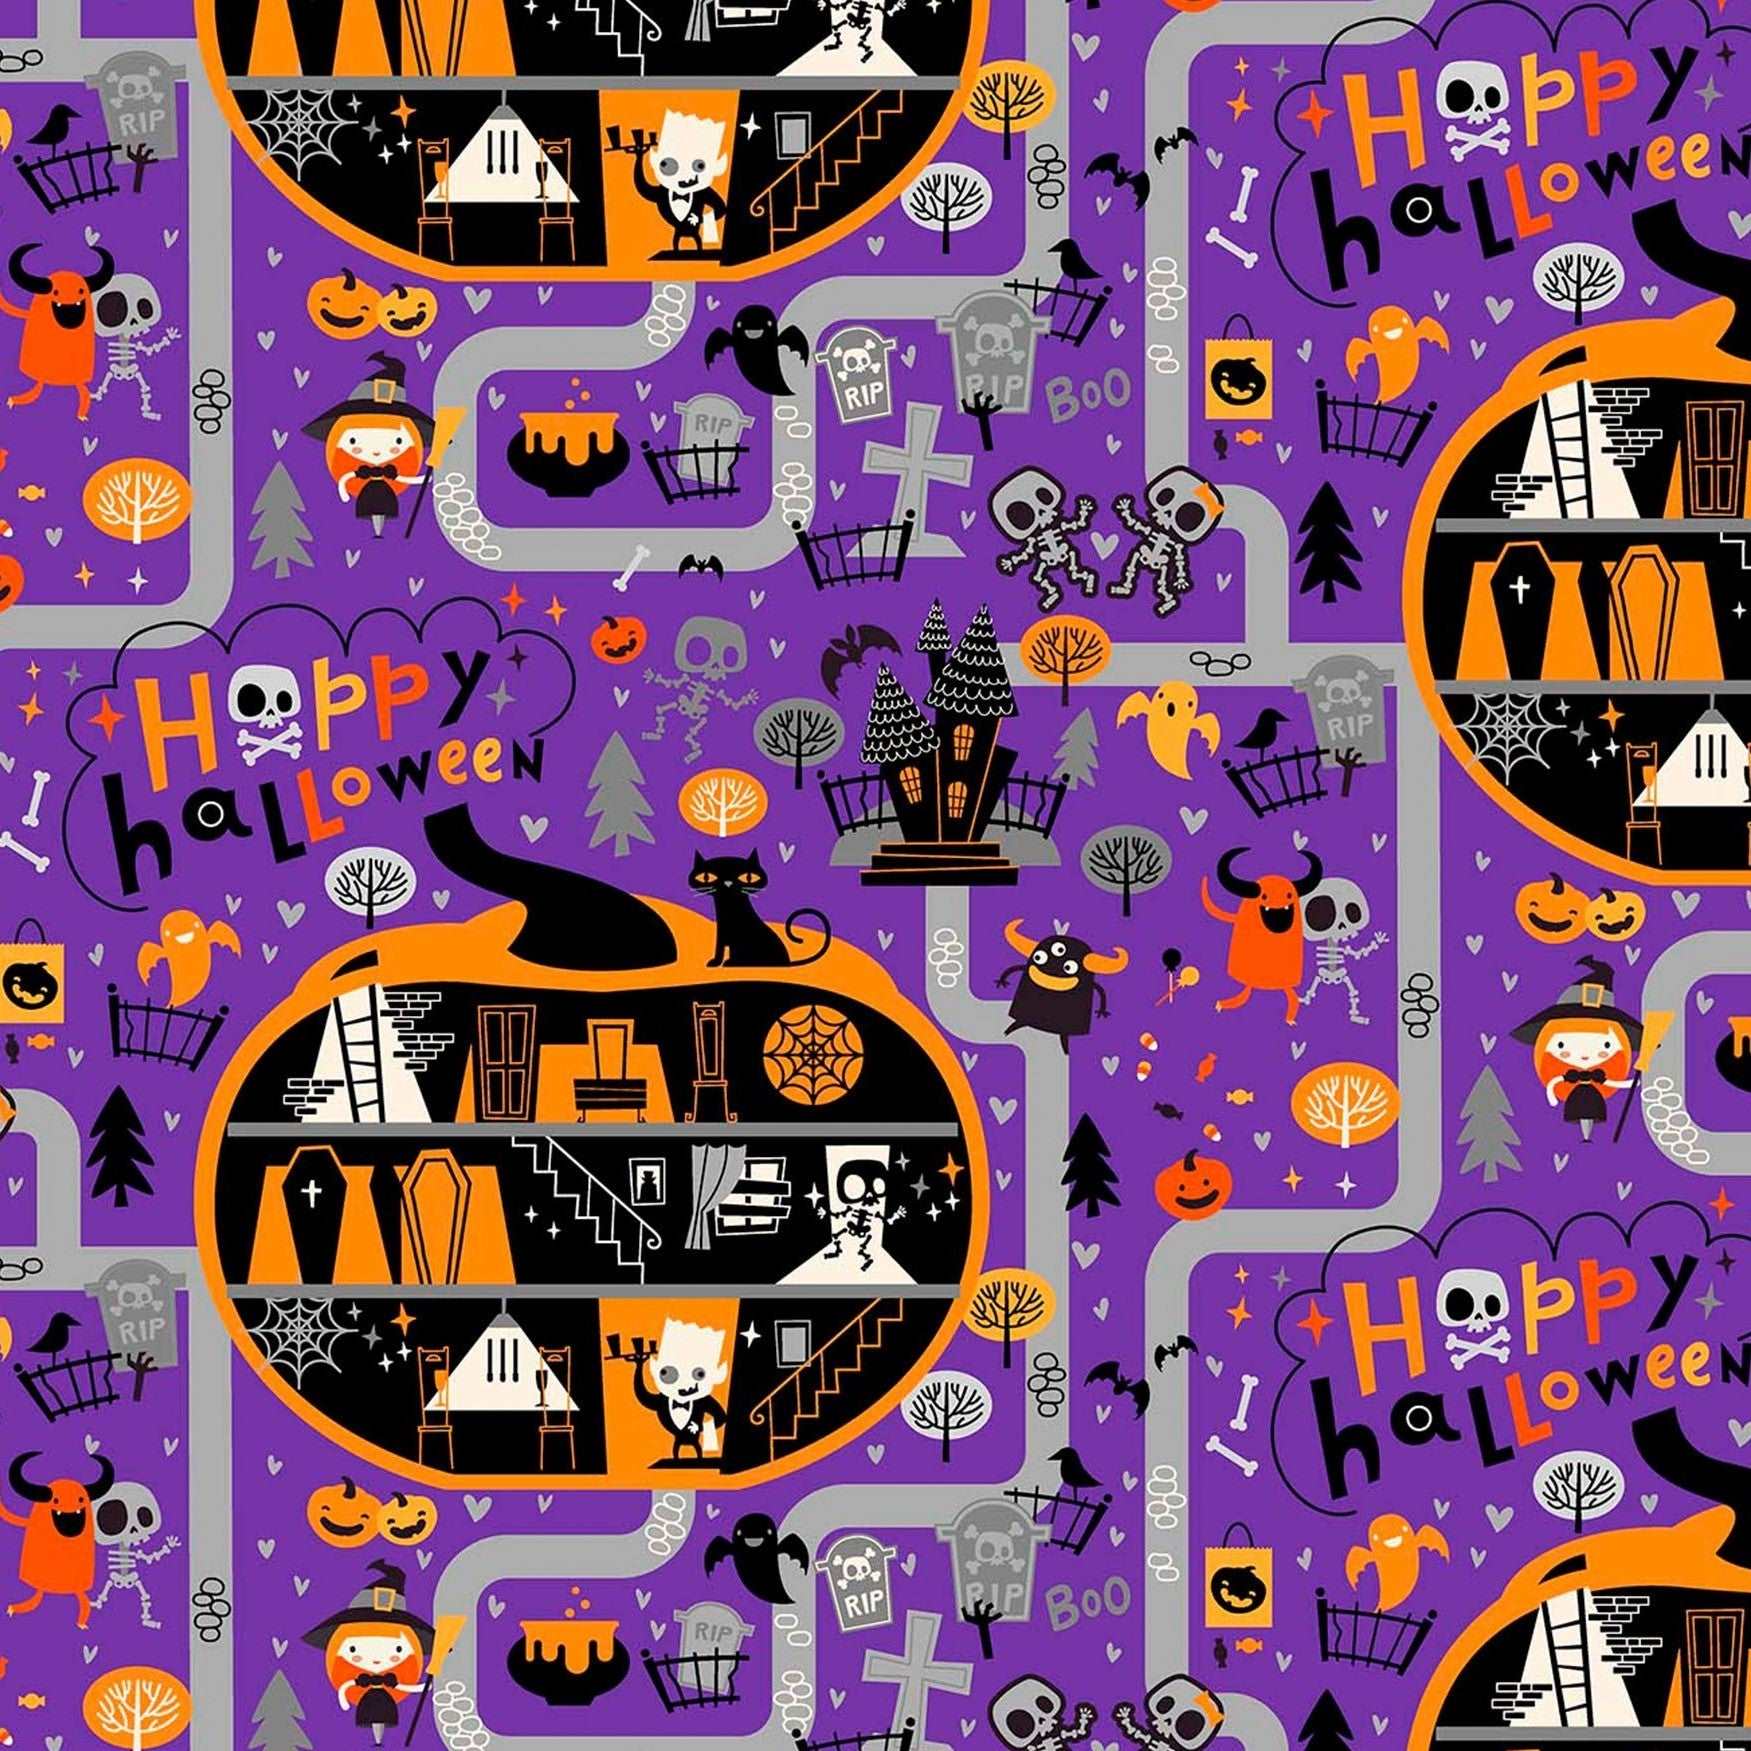 Patrick Lose Halloween Town Ghosts Pumpkins Skeletons Purple Remnant (29cm x 110cm PL Ghoultide Greetings 1)